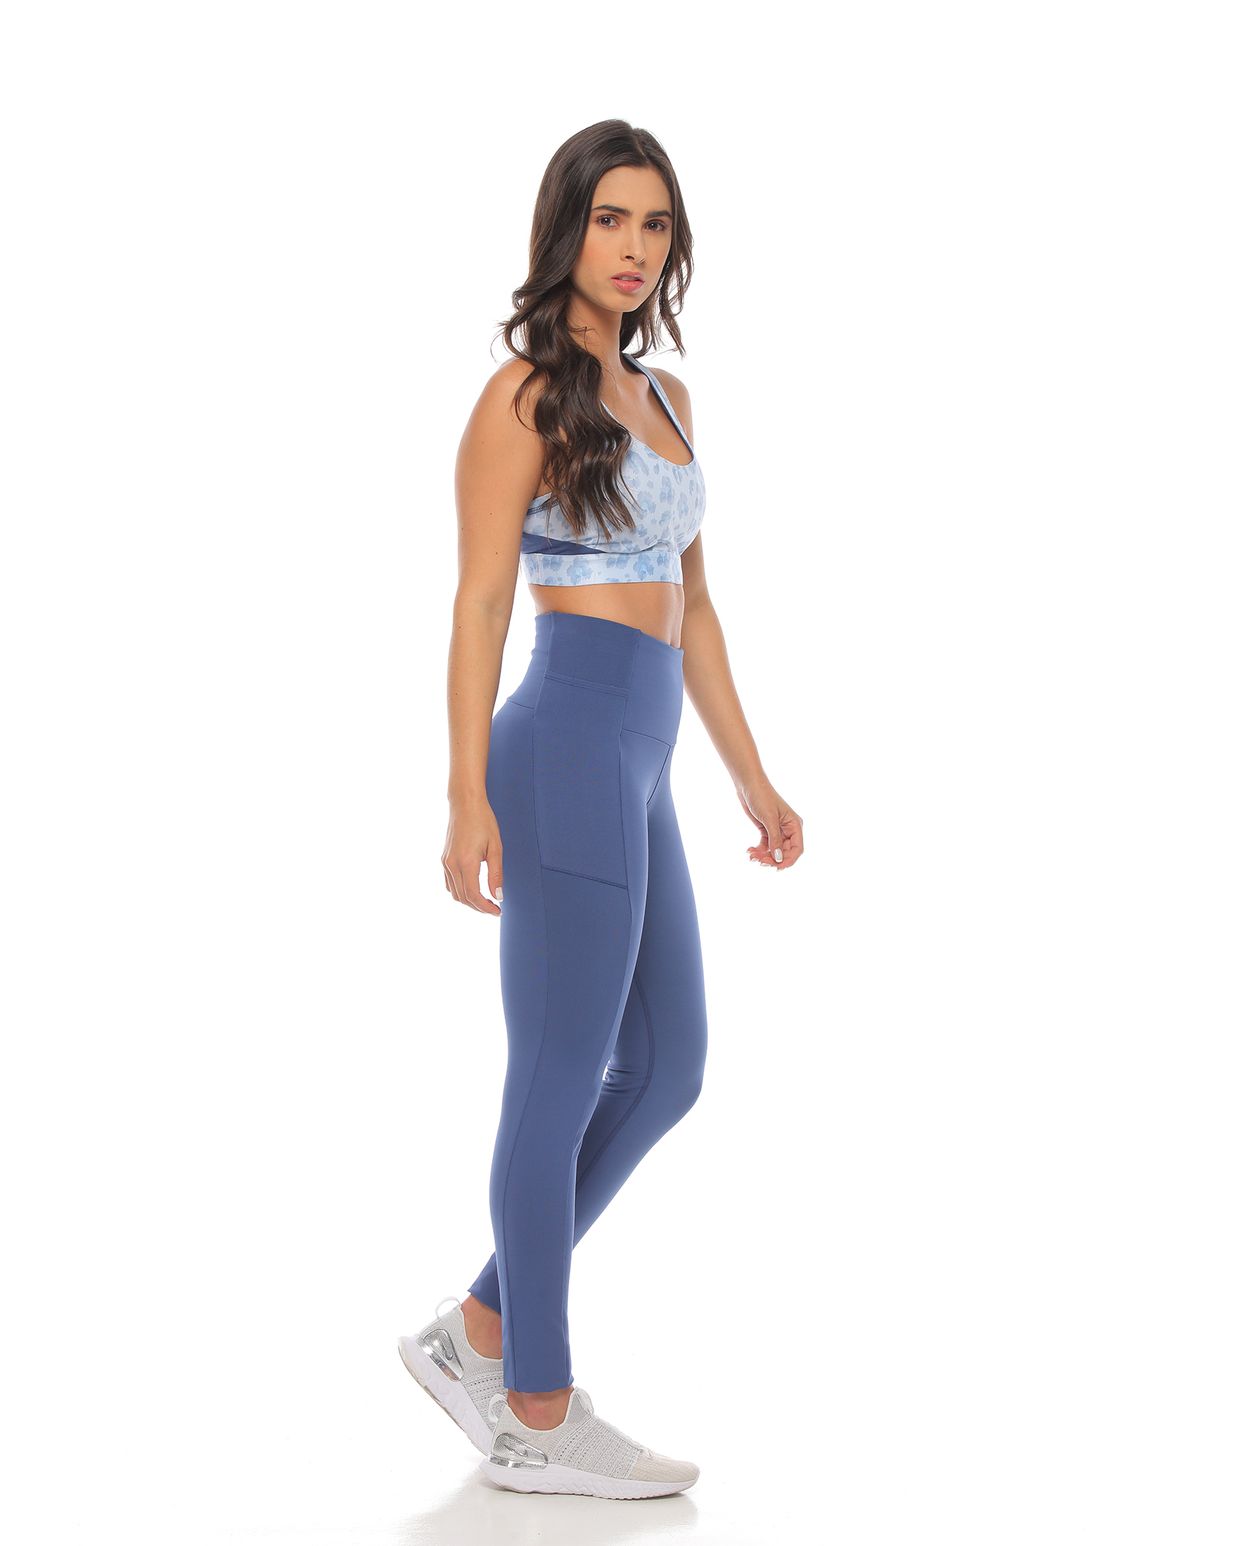 modelo con top deportivo soporte medio color azul hortensia y licra deportiva color azul para mujer cuerpo completo parte lateral derecha